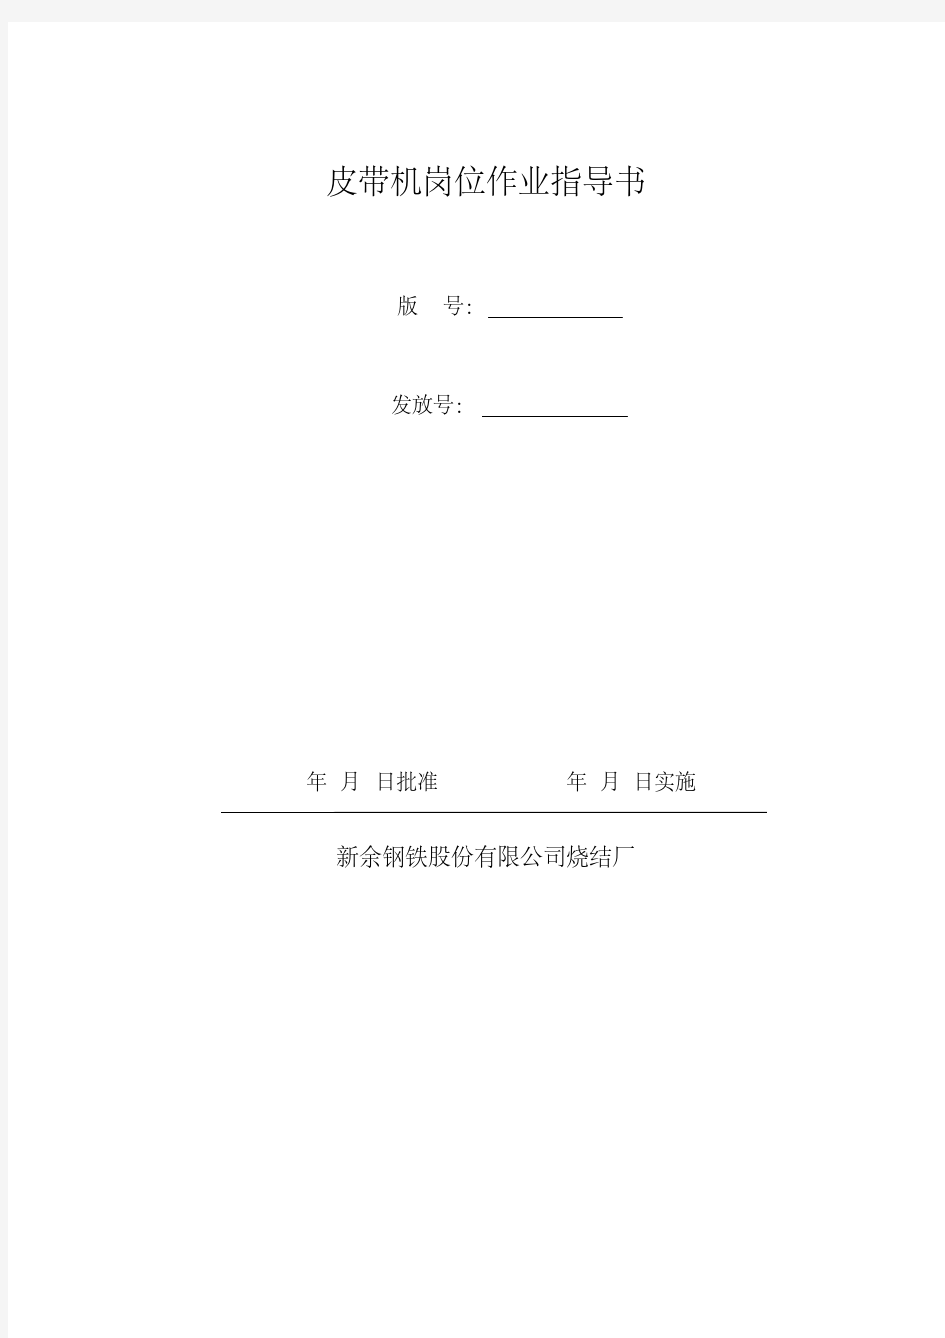 最新岗位作业指导书模版.pdf